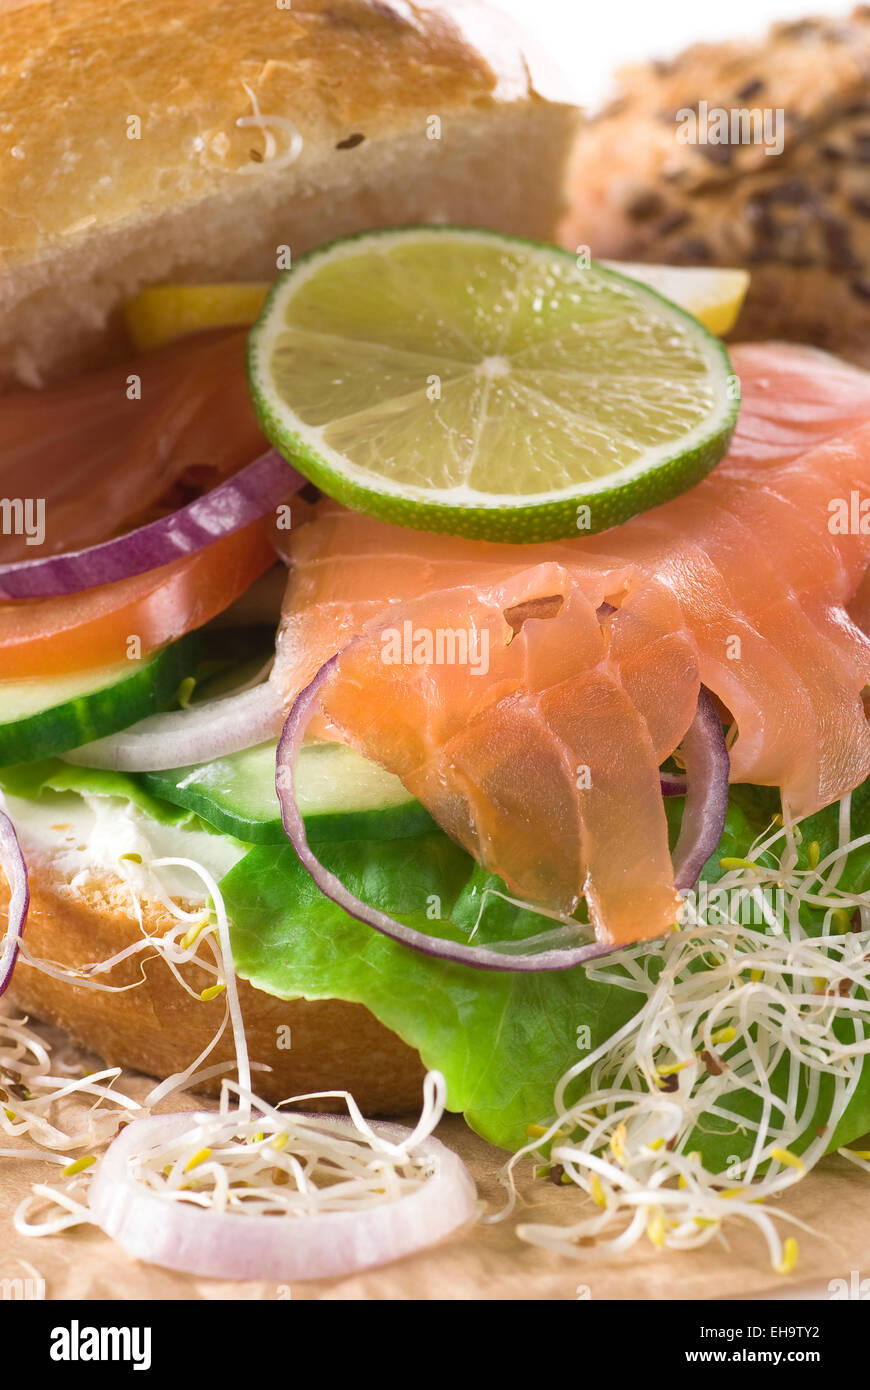 Brot mit Frischkäse, Salat, Gurke, Räucherlachs, Zwiebel, Tomaten, Limette und Zitrone. Stockfoto